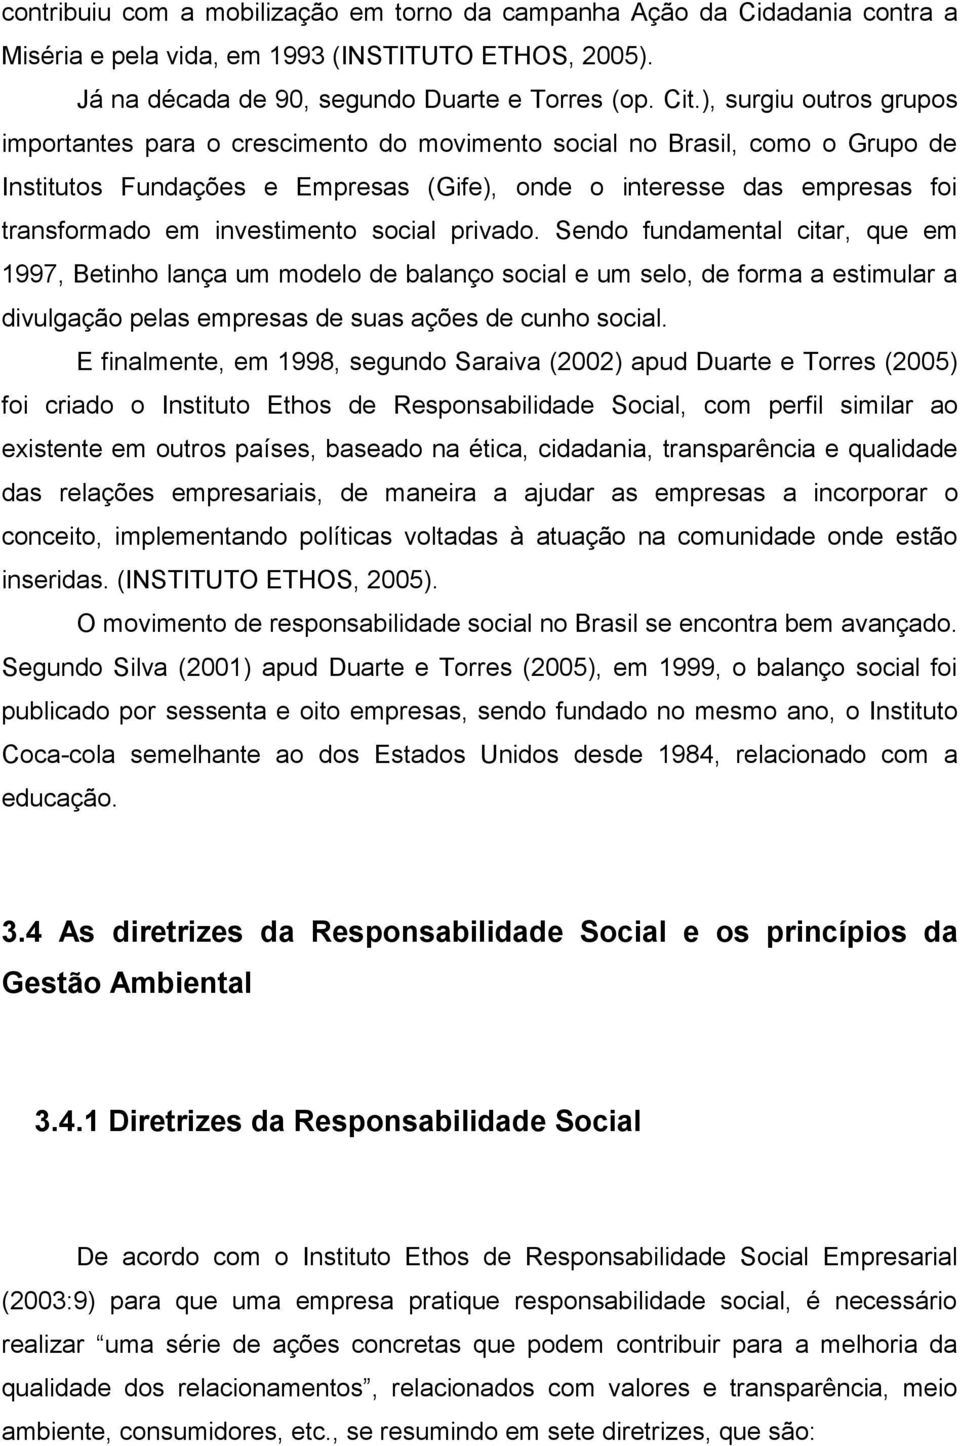 investimento social privado. Sendo fundamental citar, que em 1997, Betinho lança um modelo de balanço social e um selo, de forma a estimular a divulgação pelas empresas de suas ações de cunho social.